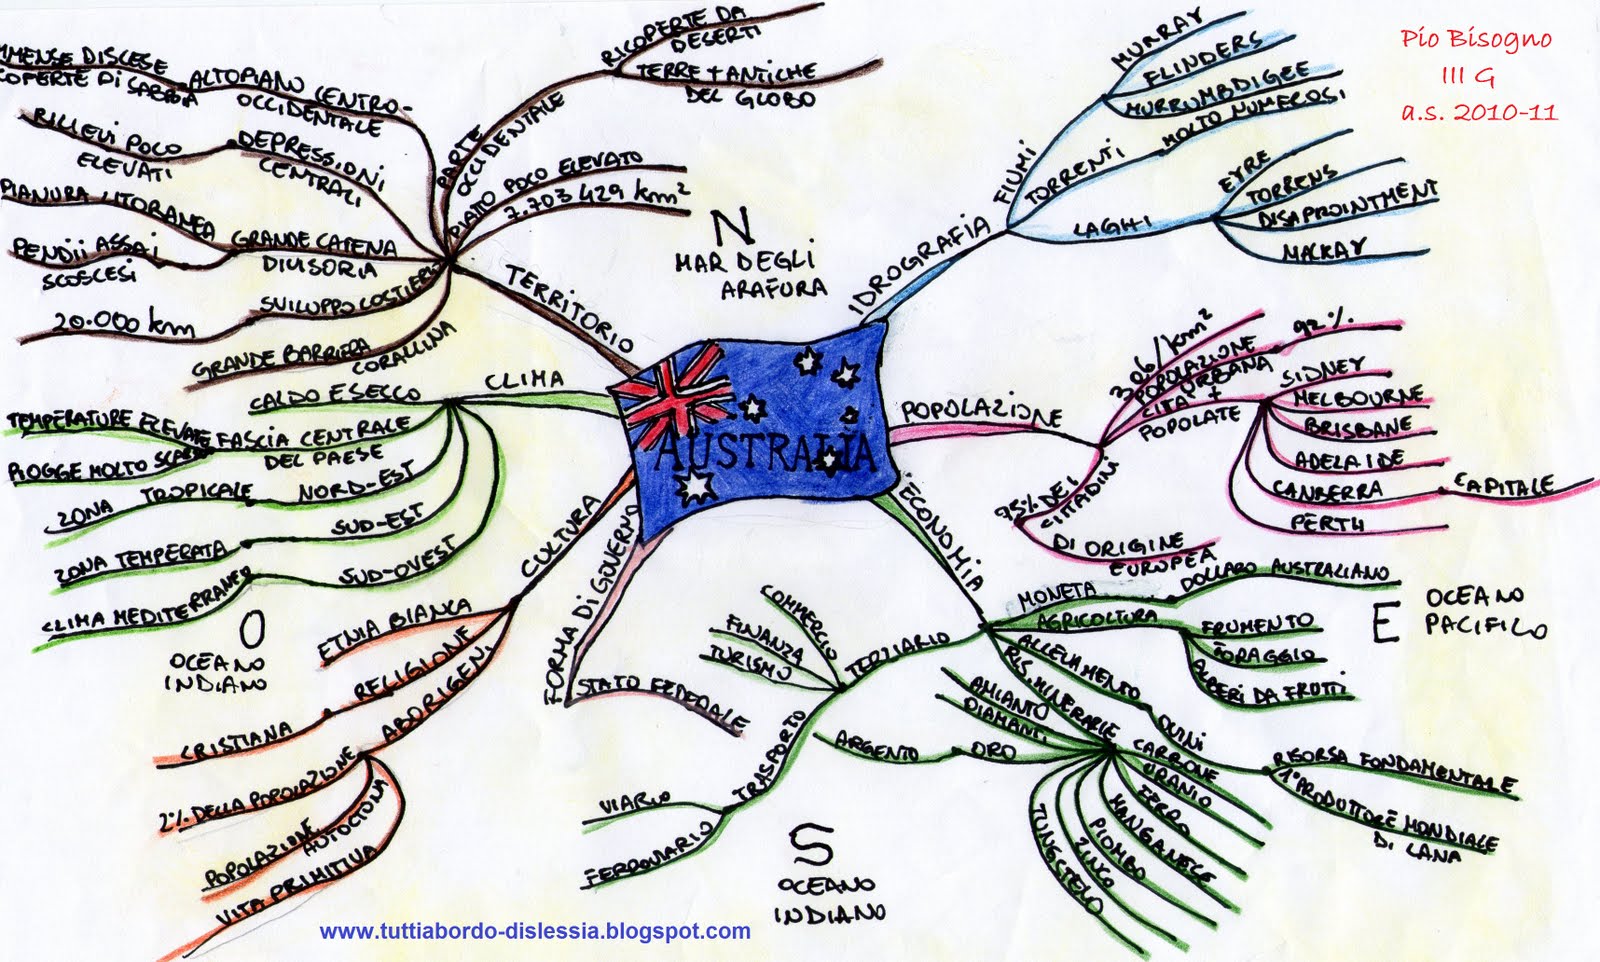 mappa mentale tutti a bordo-dislessia AUSTRALIA.jpg Mappa+mentale+tutti+a+bordo+dislessia+Australia